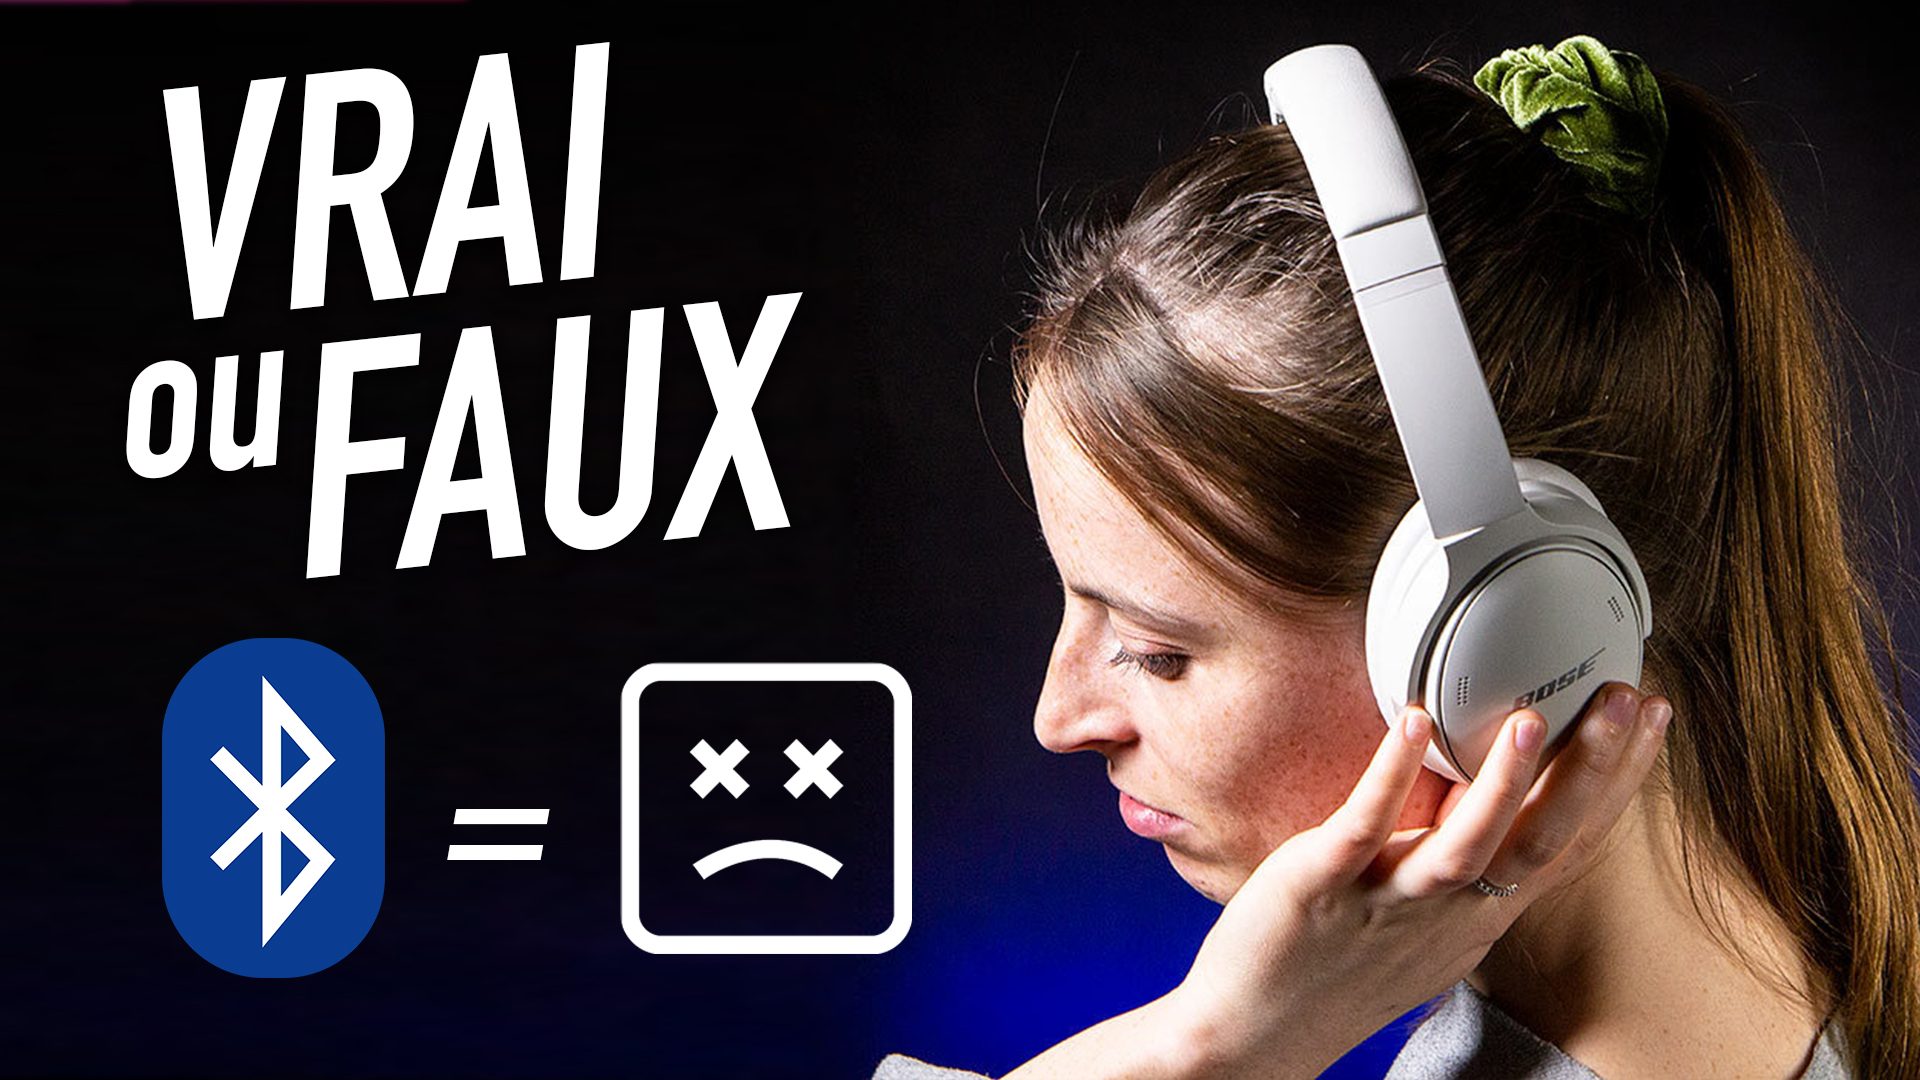 Écouter en Bluetooth, ça dégrade la qualité du son : vrai ou faux ?